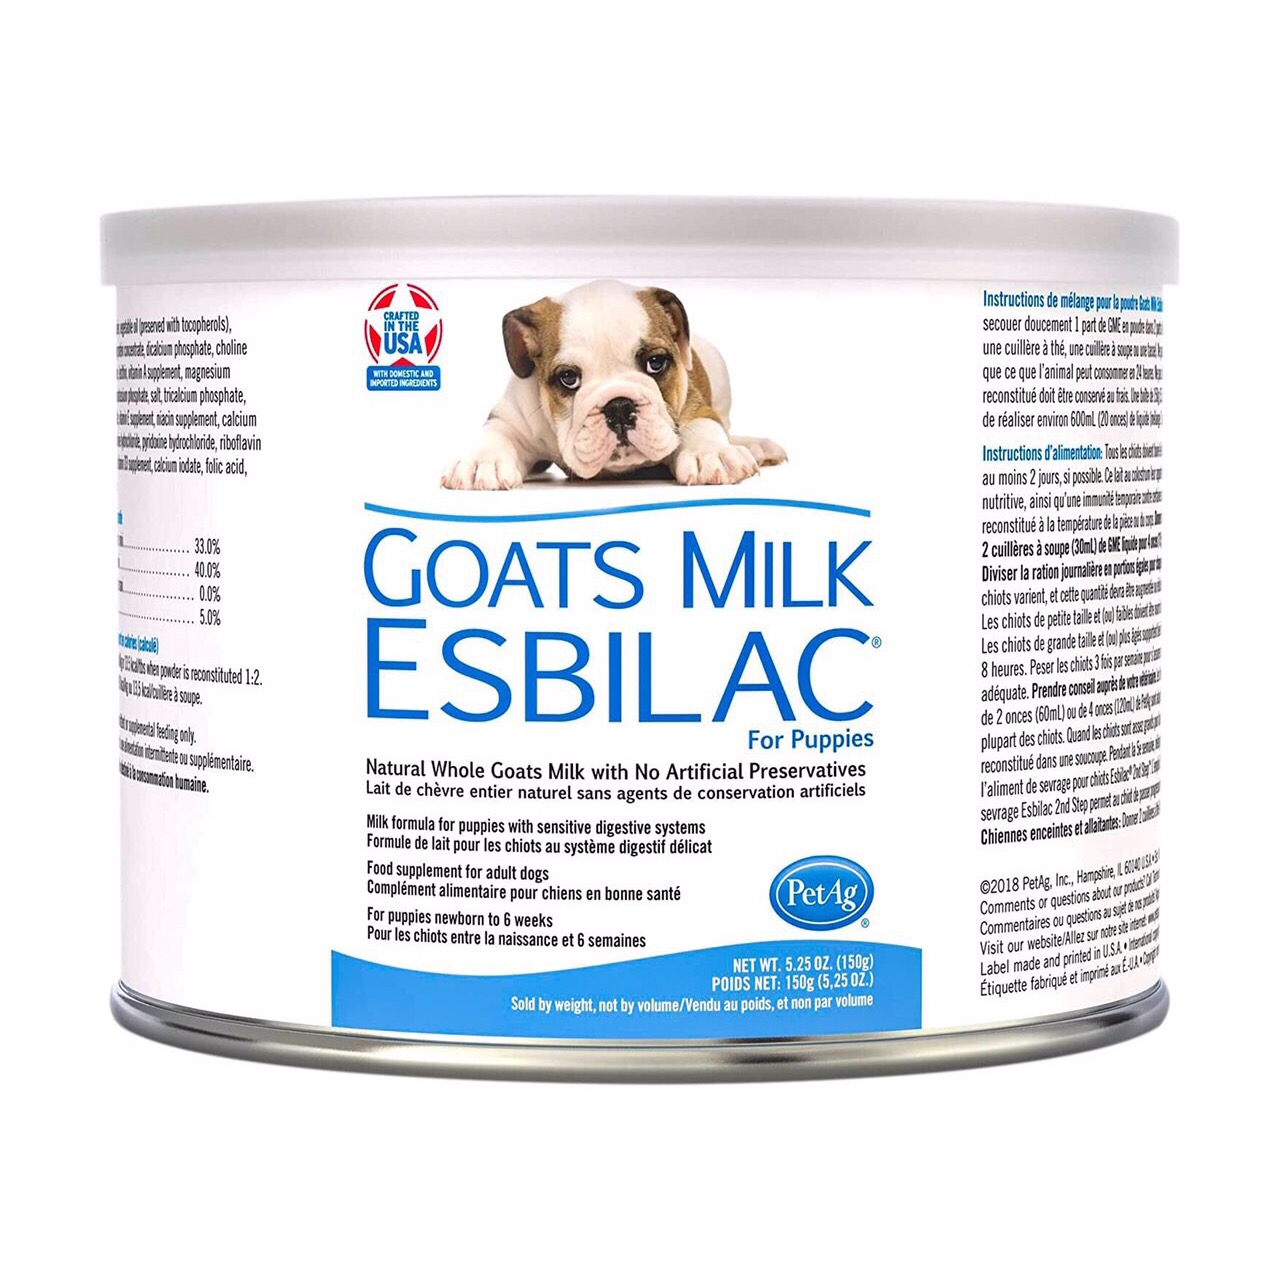 Sữa PetAg ESBILAC Goats Milk Mỹ dạng bột 150g